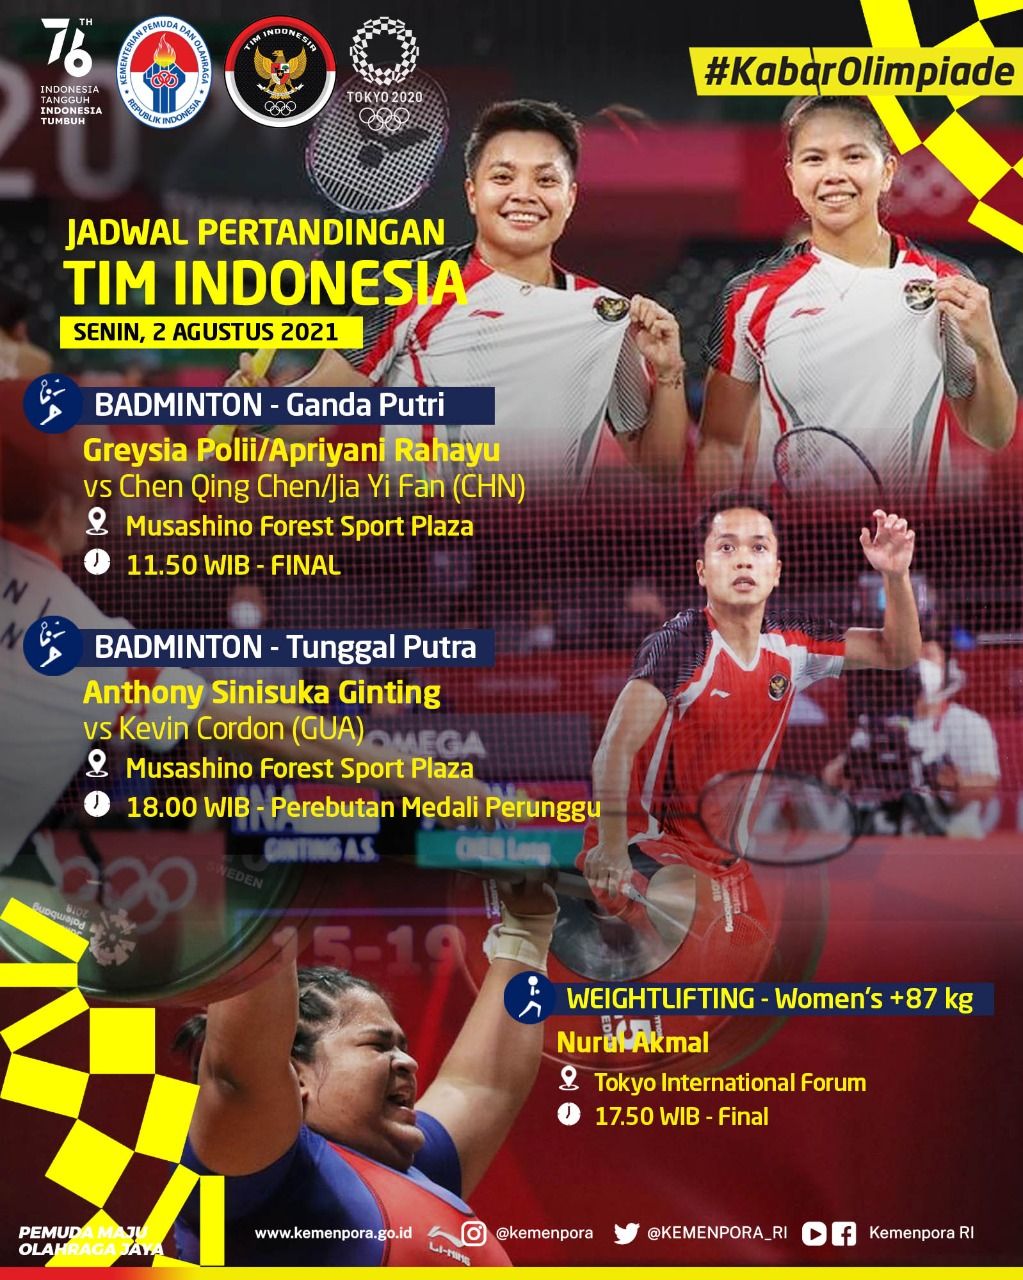 Jadwal pertandingan atlet Indonesia di Olimpiade Tokyo 2020.